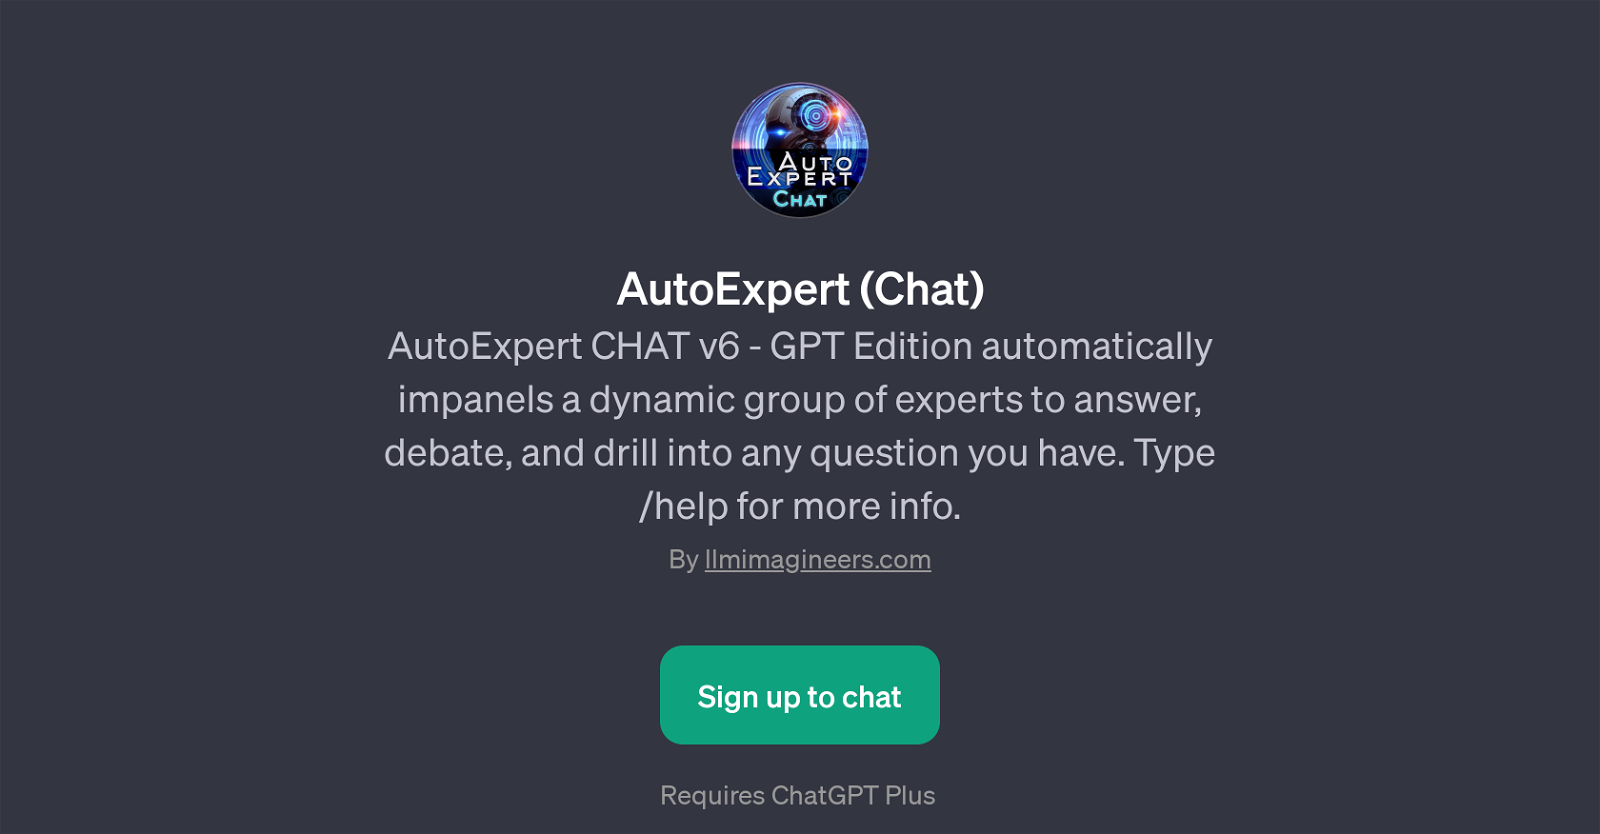 AutoExpert (Chat) website